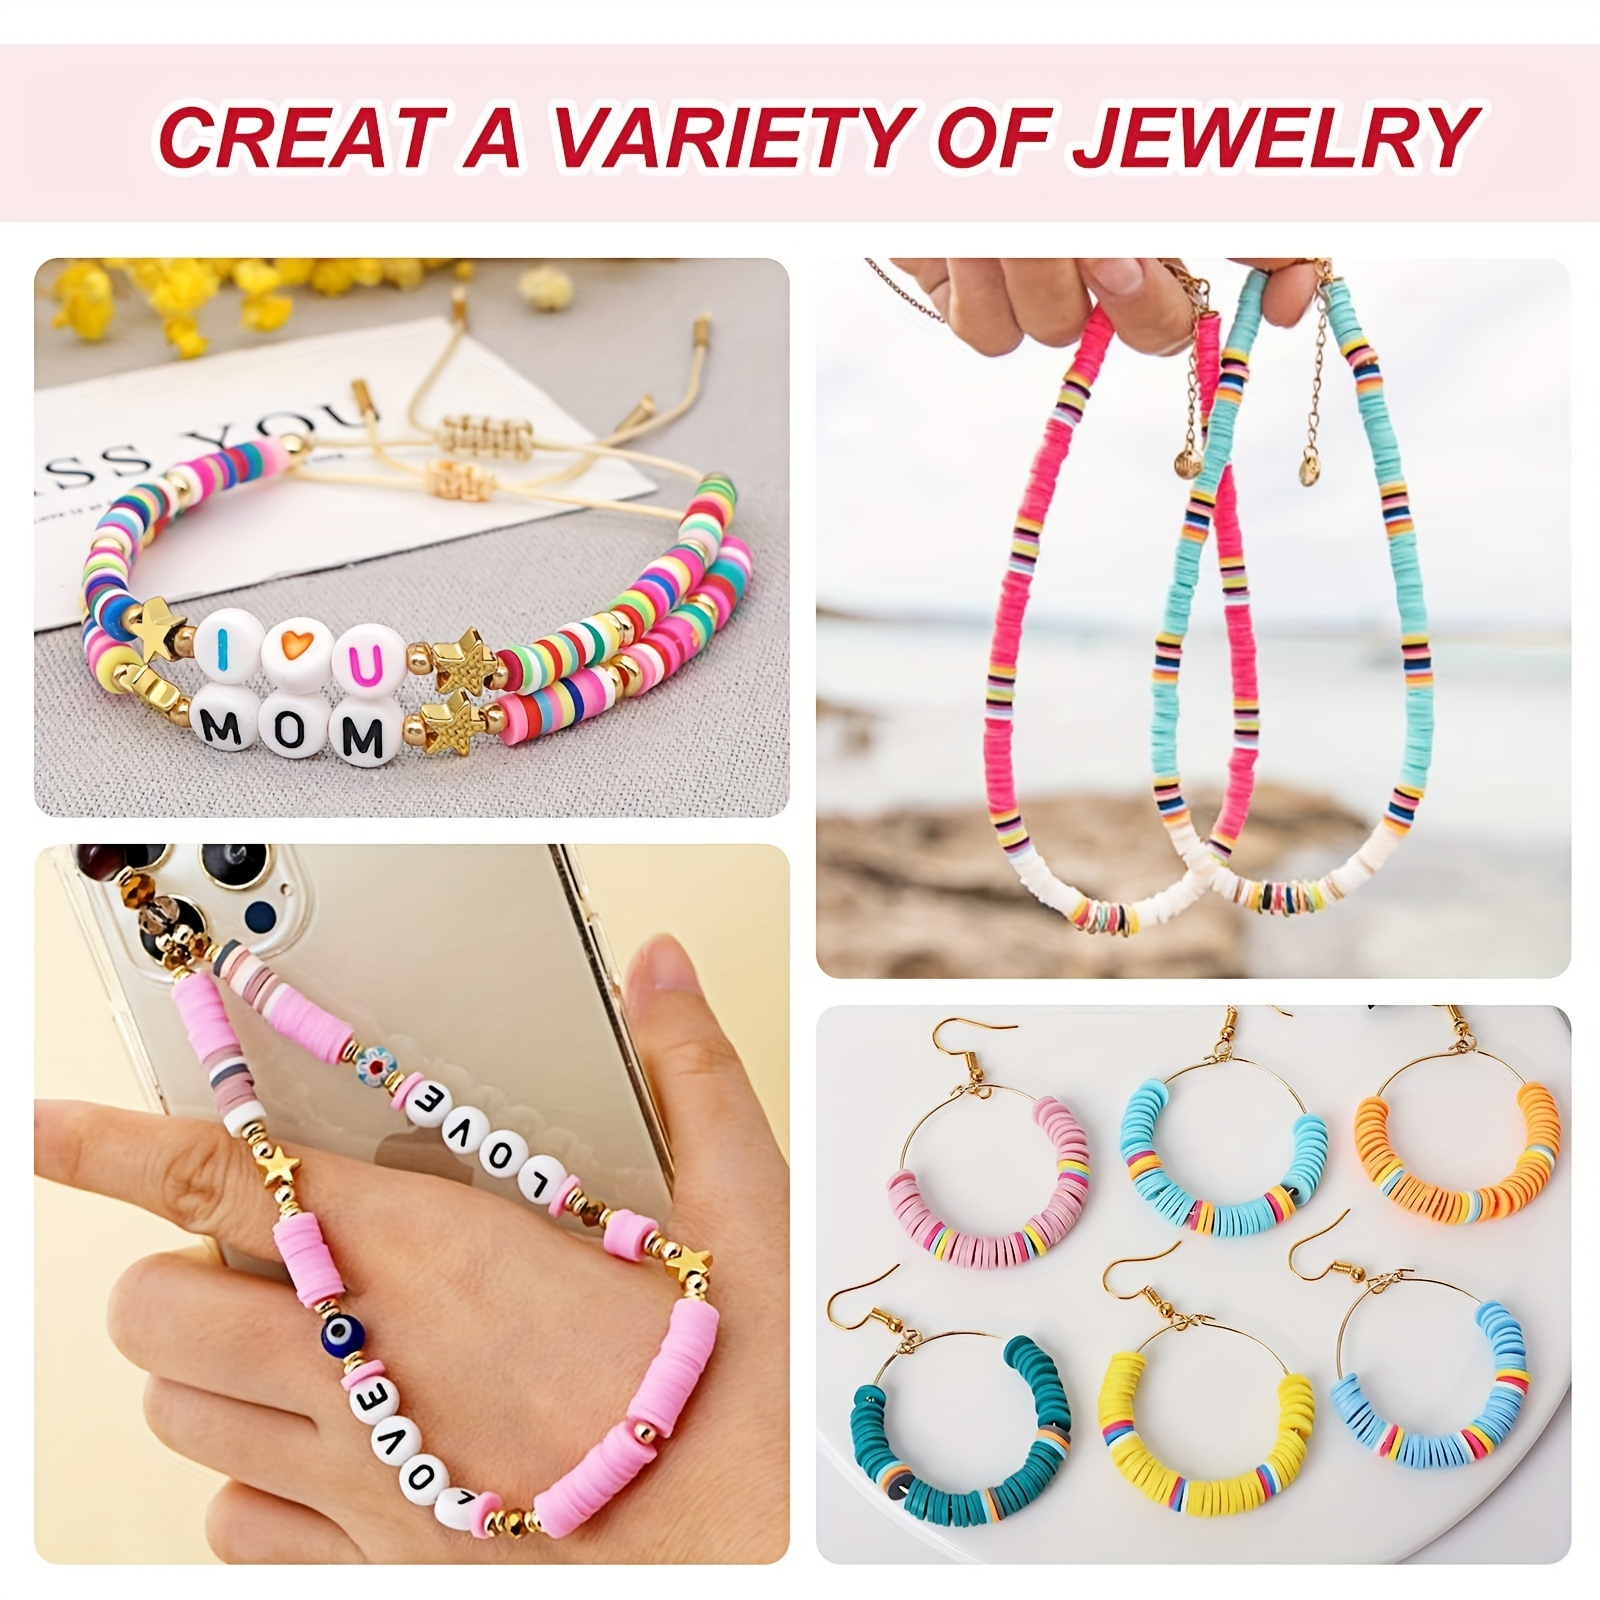 7200 Pcs Clay Beads for Bracelet Making Kit for Kids,DIY